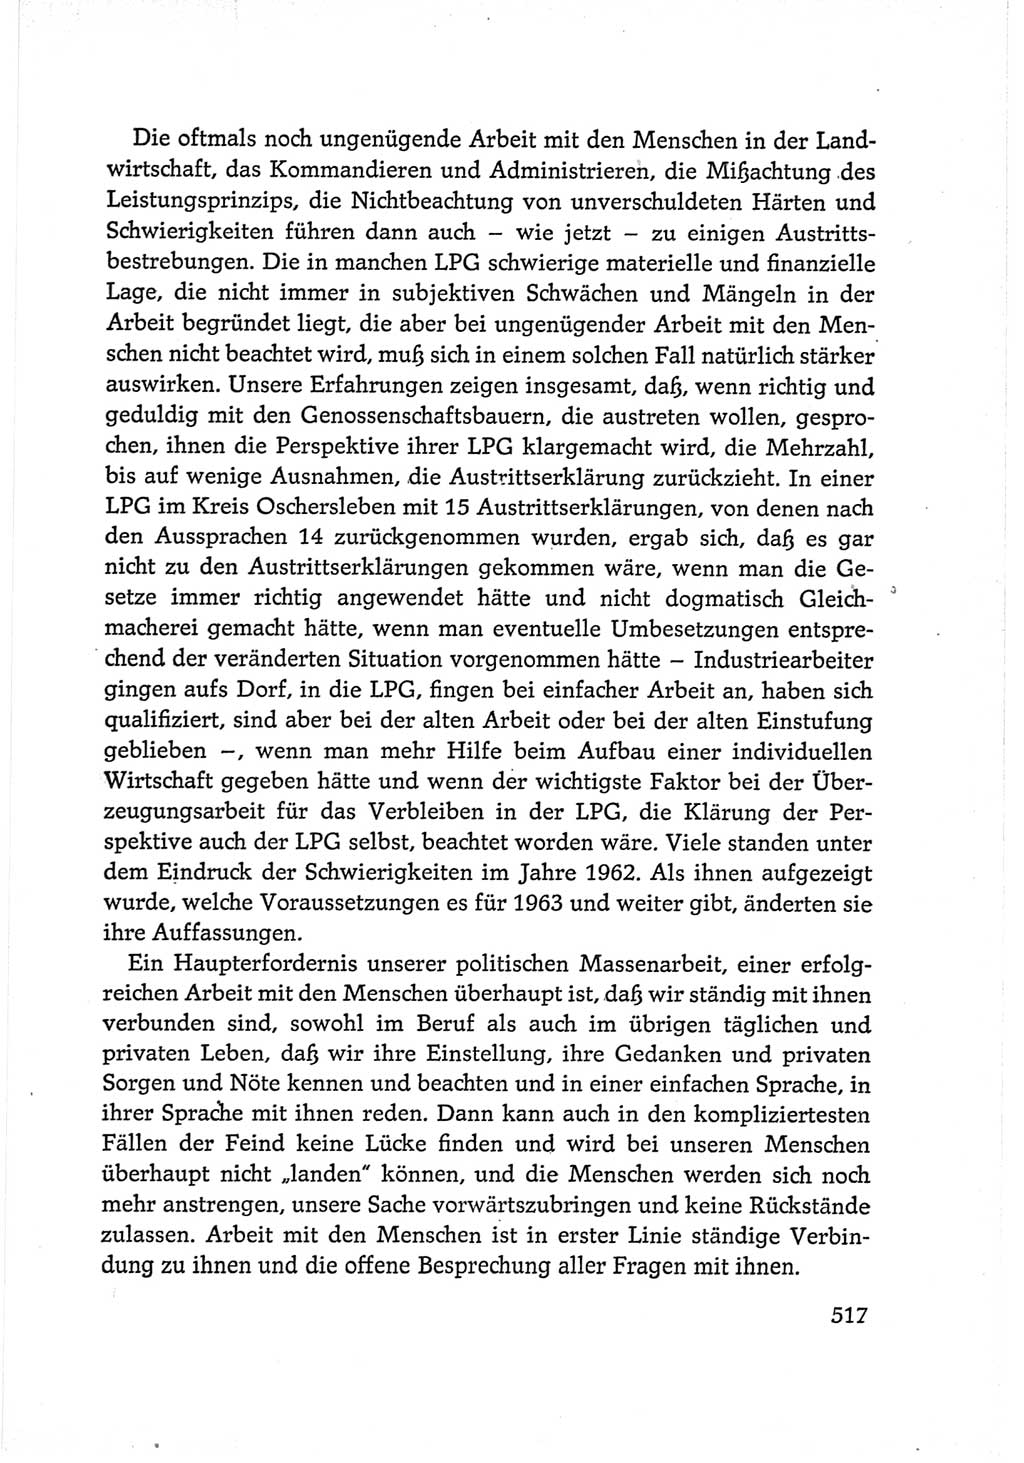 Protokoll der Verhandlungen des Ⅵ. Parteitages der Sozialistischen Einheitspartei Deutschlands (SED) [Deutsche Demokratische Republik (DDR)] 1963, Band Ⅰ, Seite 517 (Prot. Verh. Ⅵ. PT SED DDR 1963, Bd. Ⅰ, S. 517)